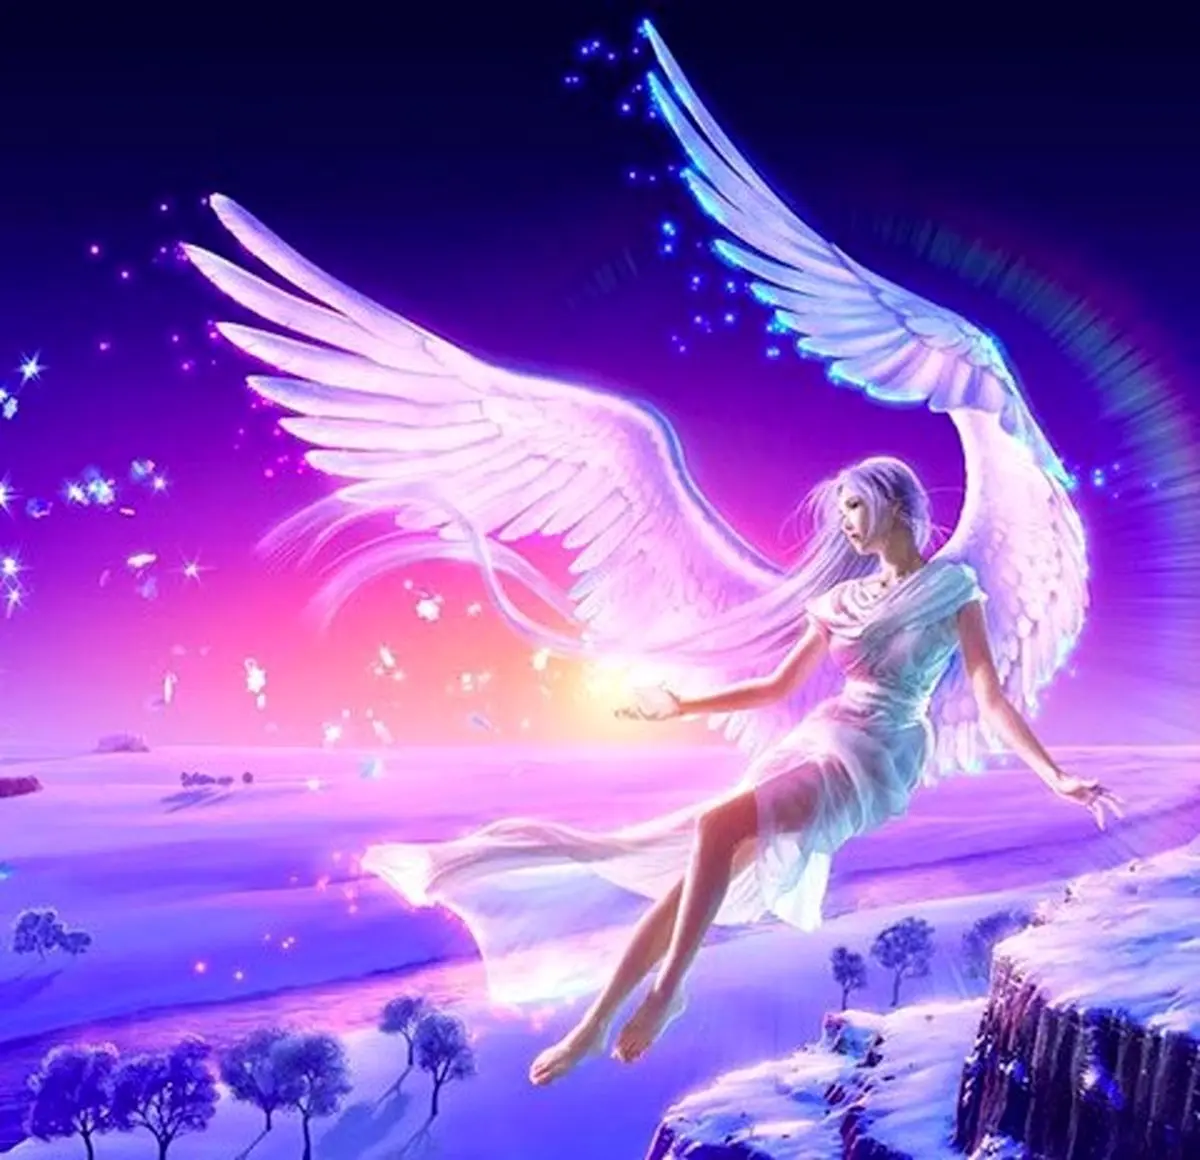 فال فرشتگان 7  آبان ماه | فرشتگان برای شما چه پیام مثبتی دارند؟